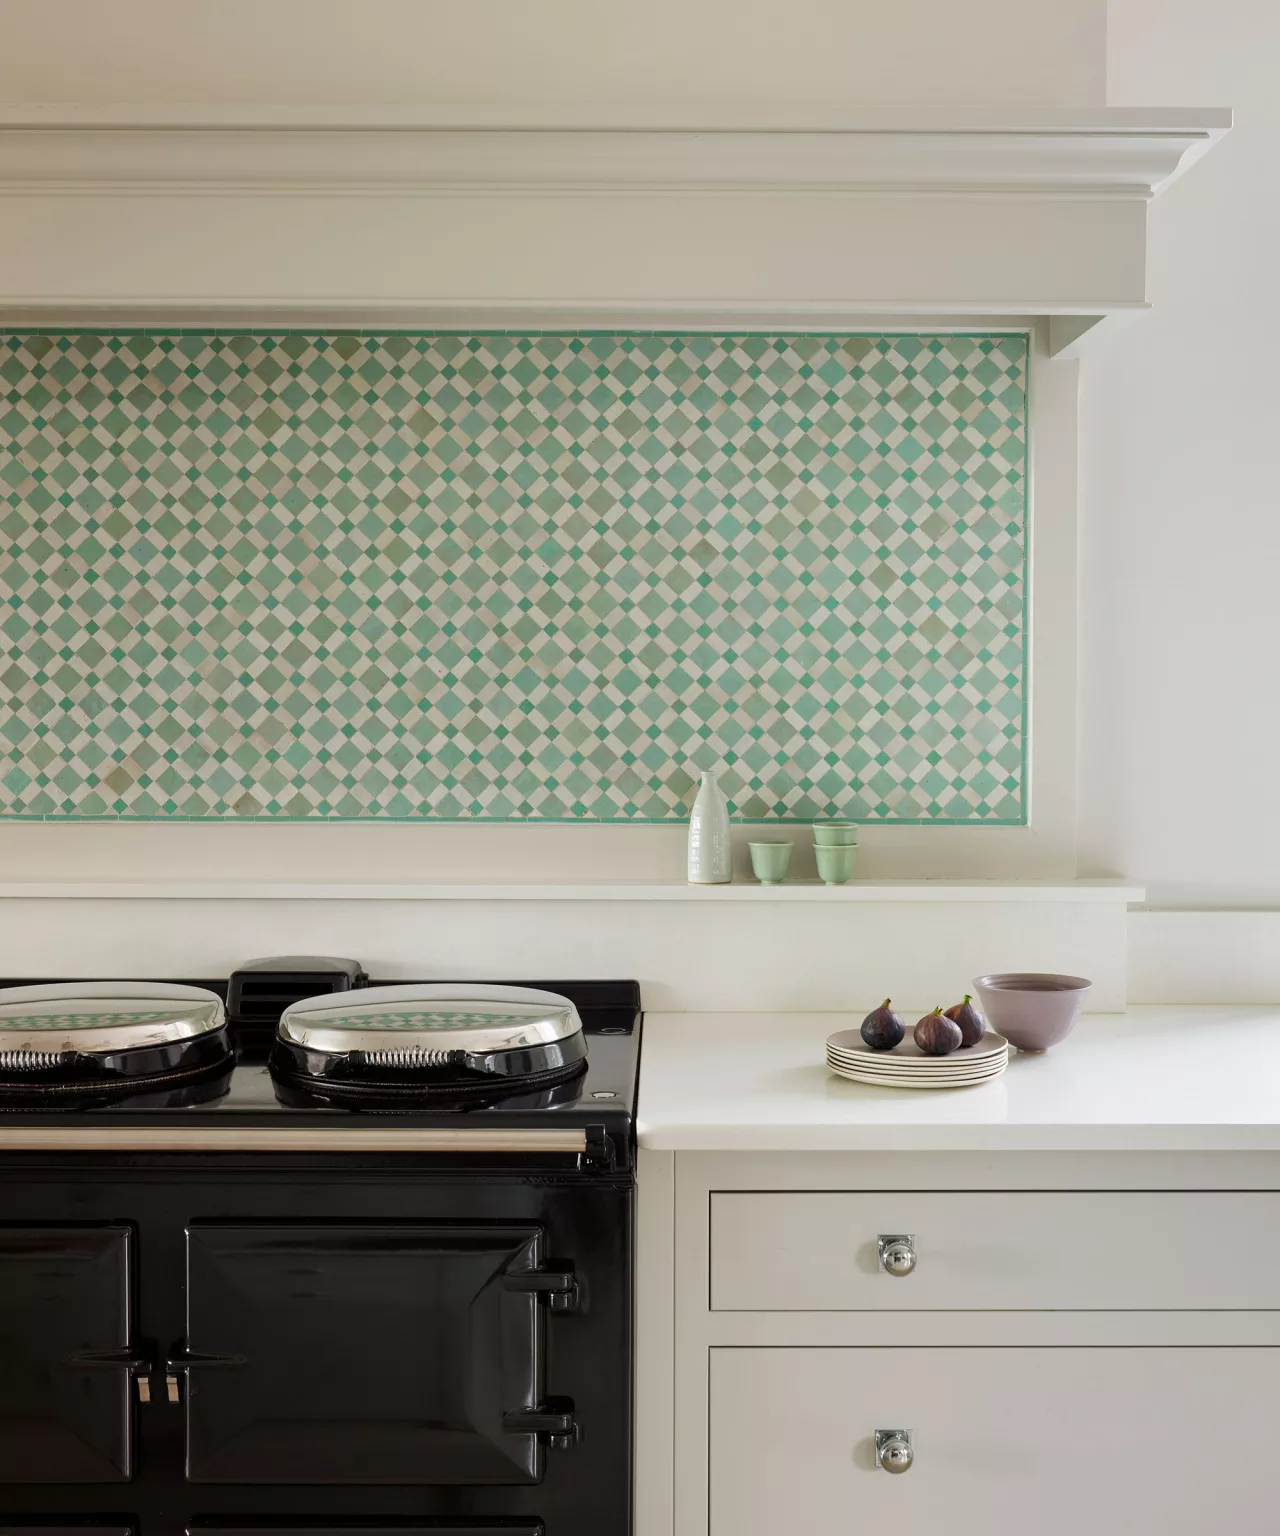 Как выбрать цвет кухни — 37 схем окраски и декоративных палитр